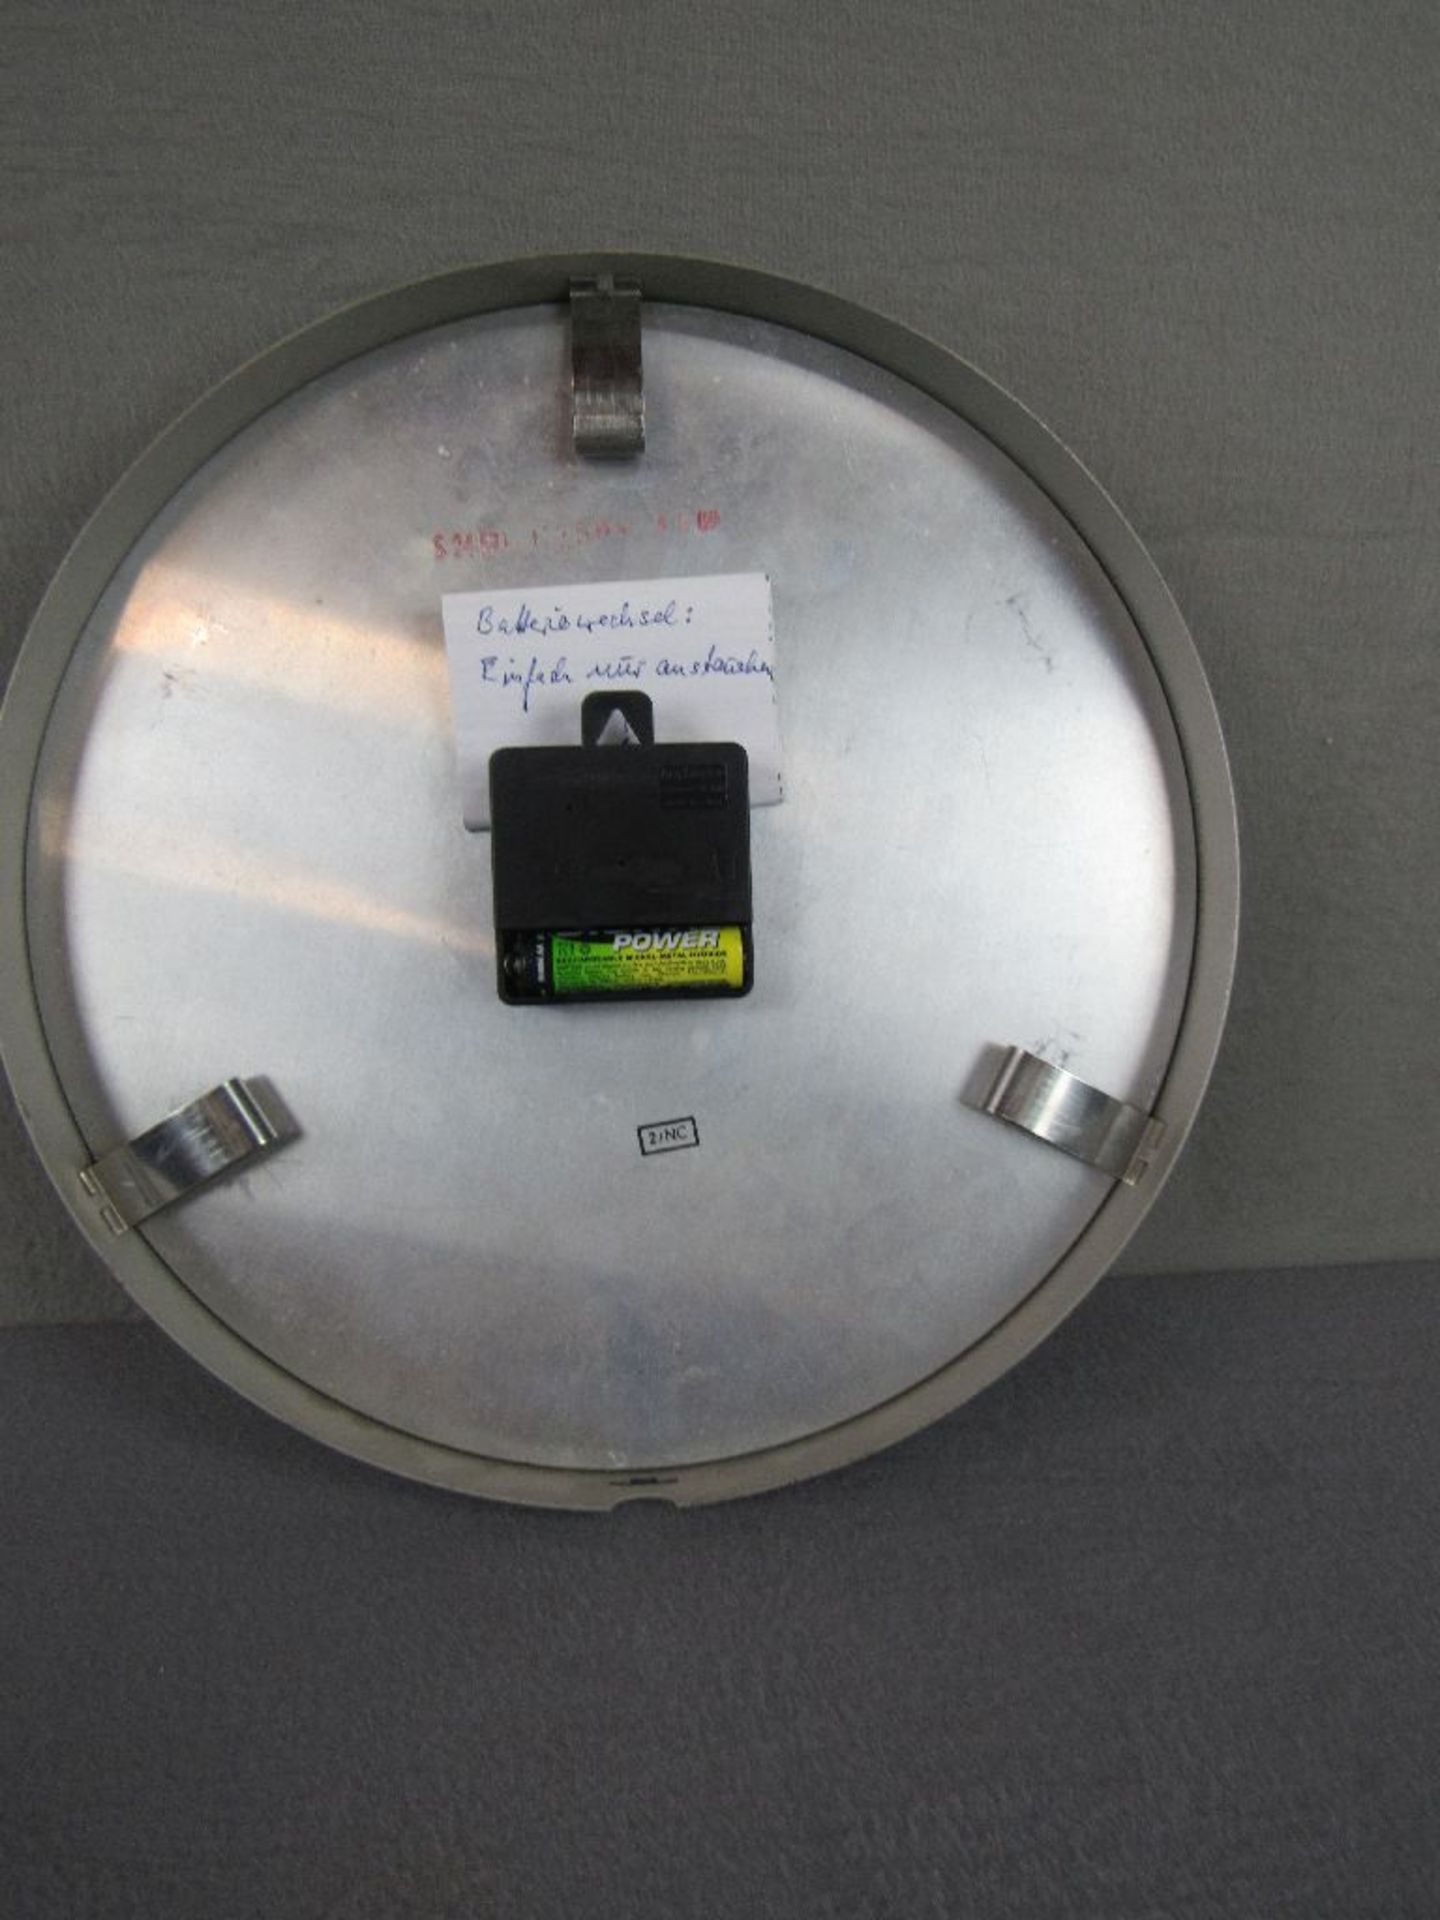 Wanduhr Metall Siemens Industrieuhr funktionstüchtig 28cm Durchmesser - Bild 3 aus 3